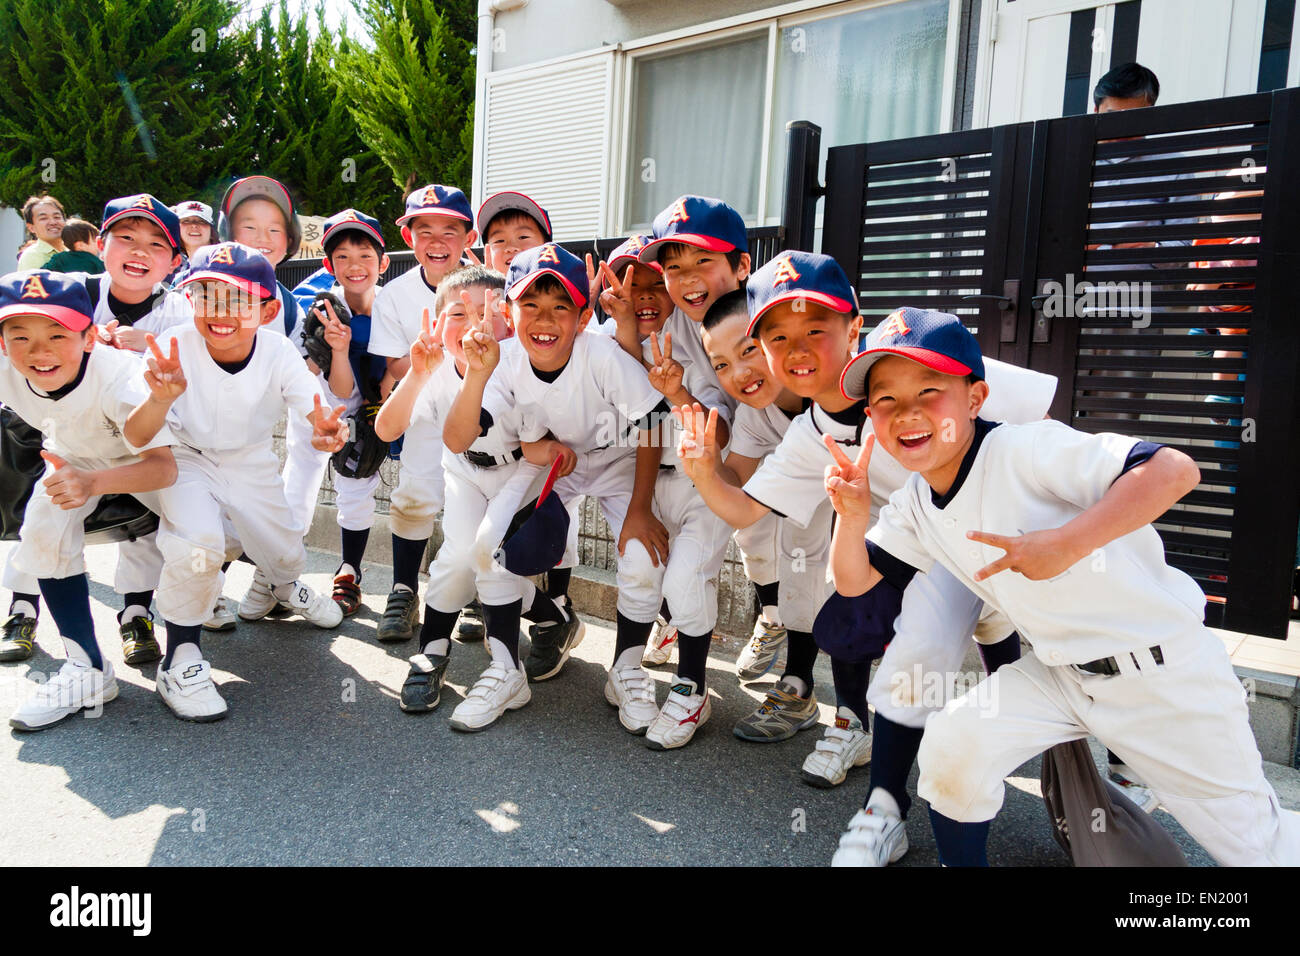 Grupo de niños pequeños, chicos, de 7-10 años, un equipo de béisbol que se posan para el espectador, sonriendo y dando dos gestos de paz con los dedos. Foto de stock